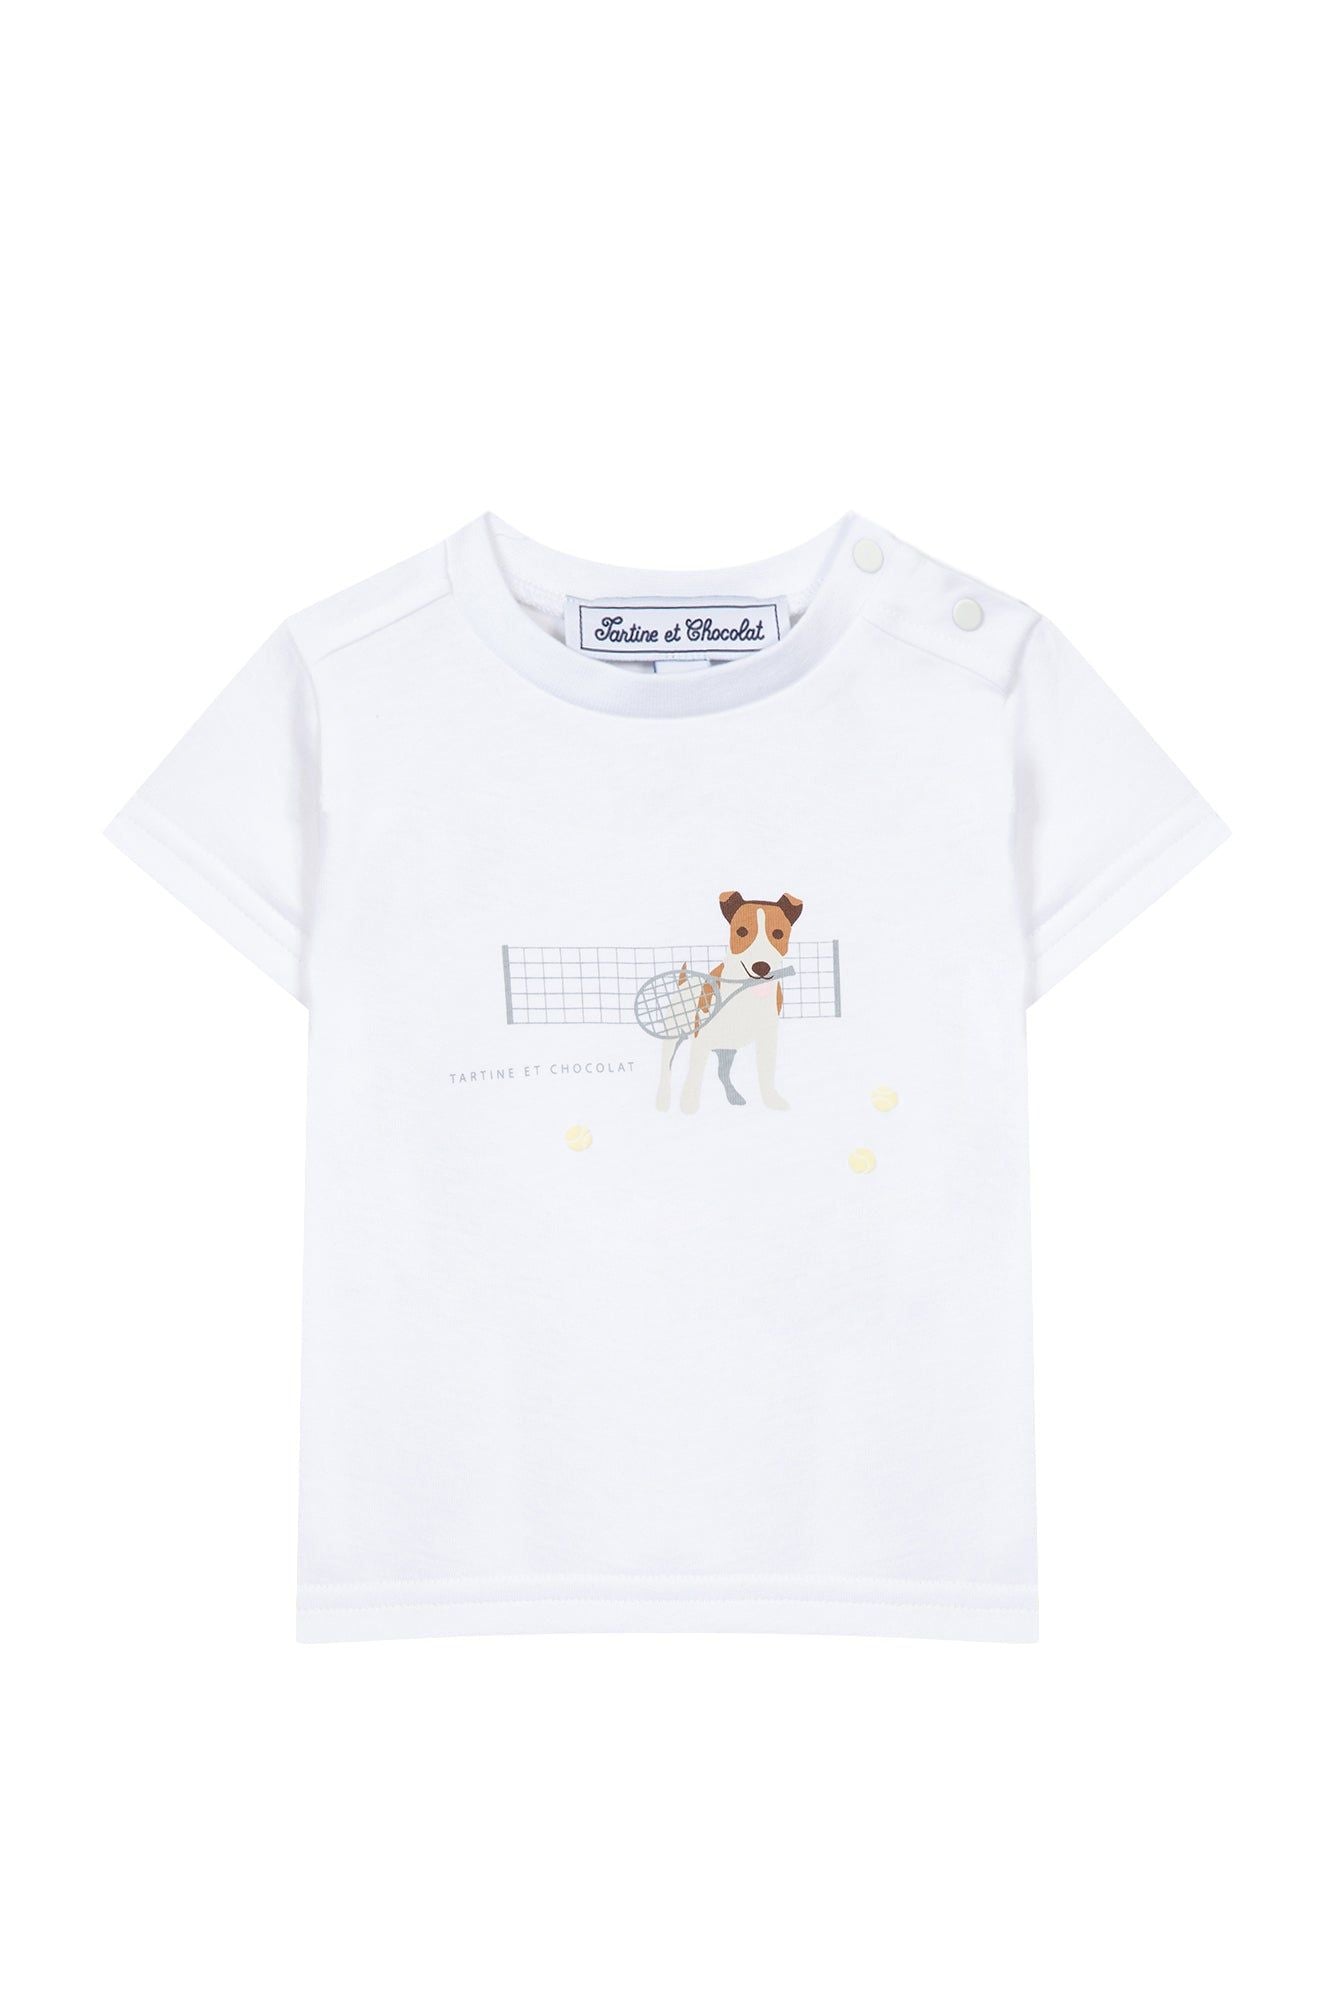 Graphite Baby Tc Club T-shirt